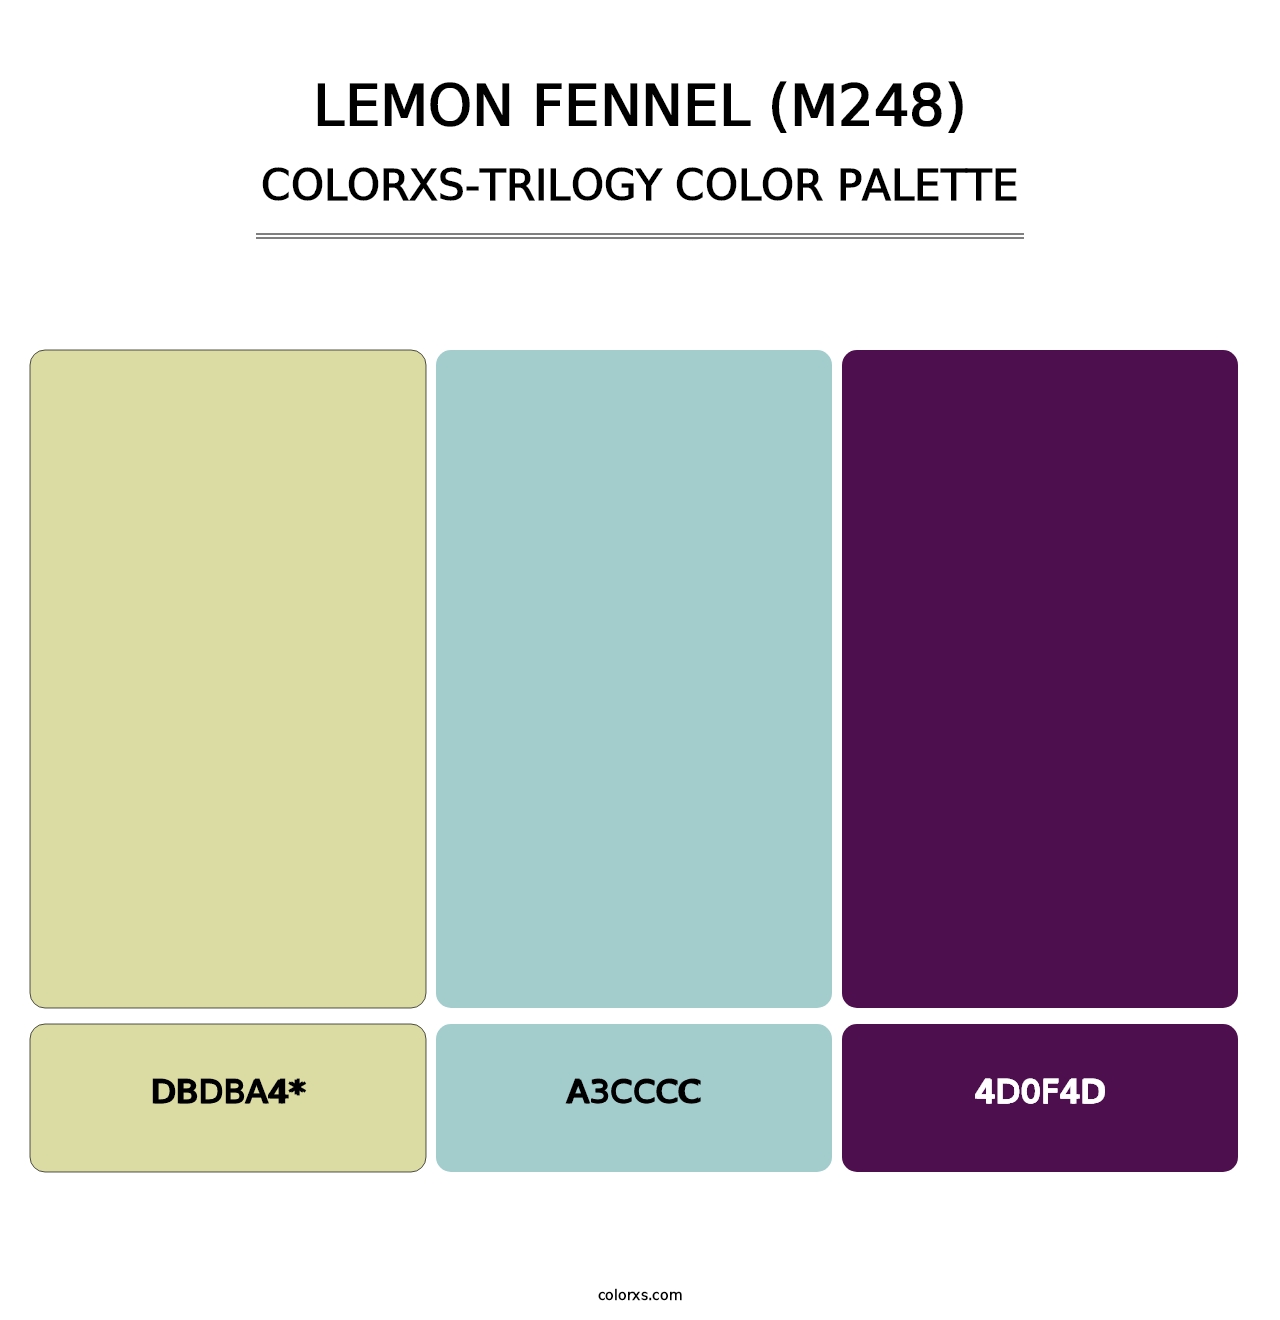 Lemon Fennel (M248) - Colorxs Trilogy Palette